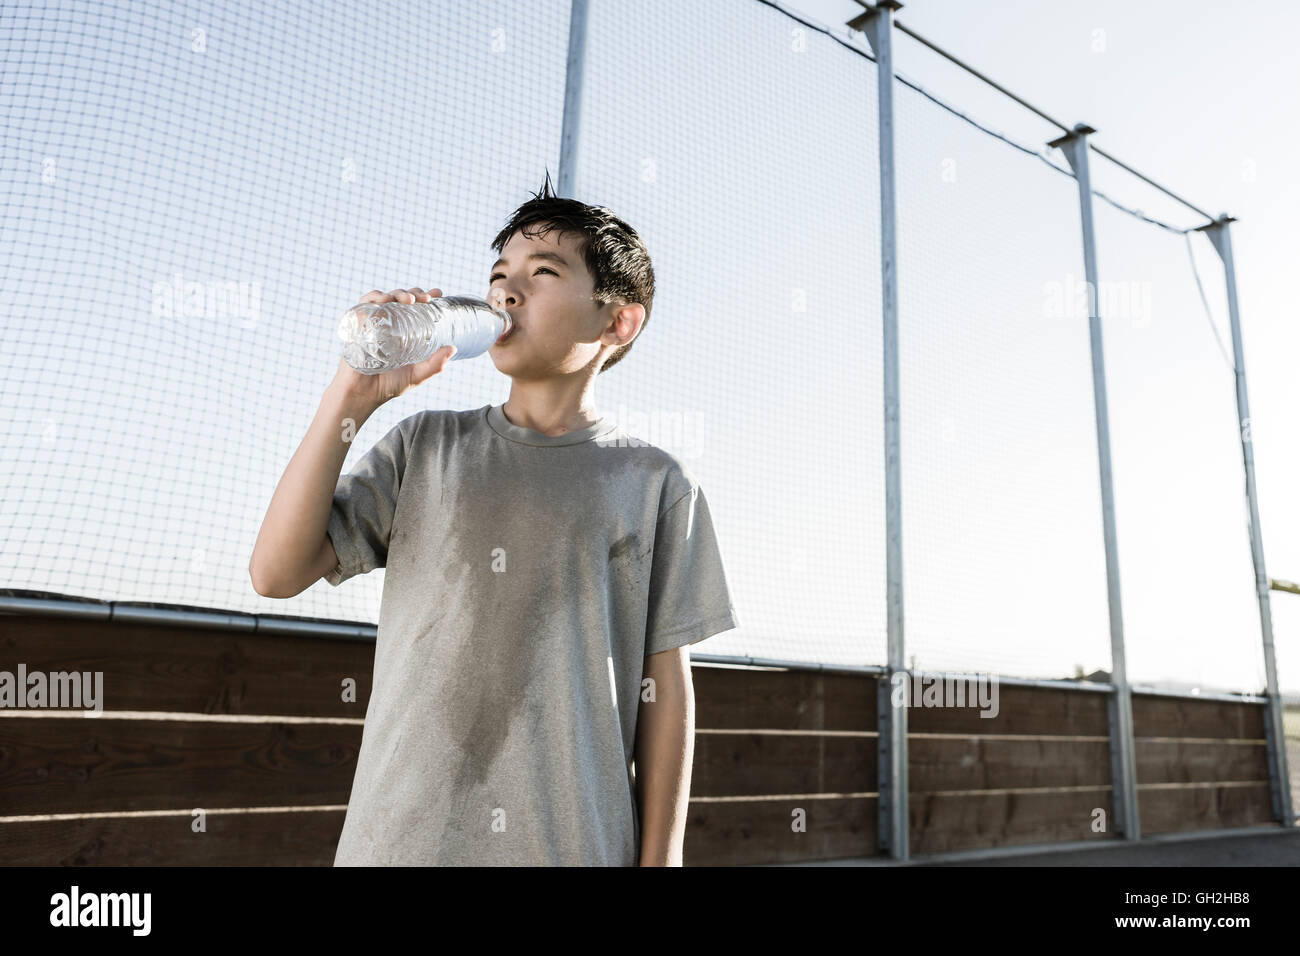 Junge trinkt Wasser an einem heißen Tag. Stockfoto